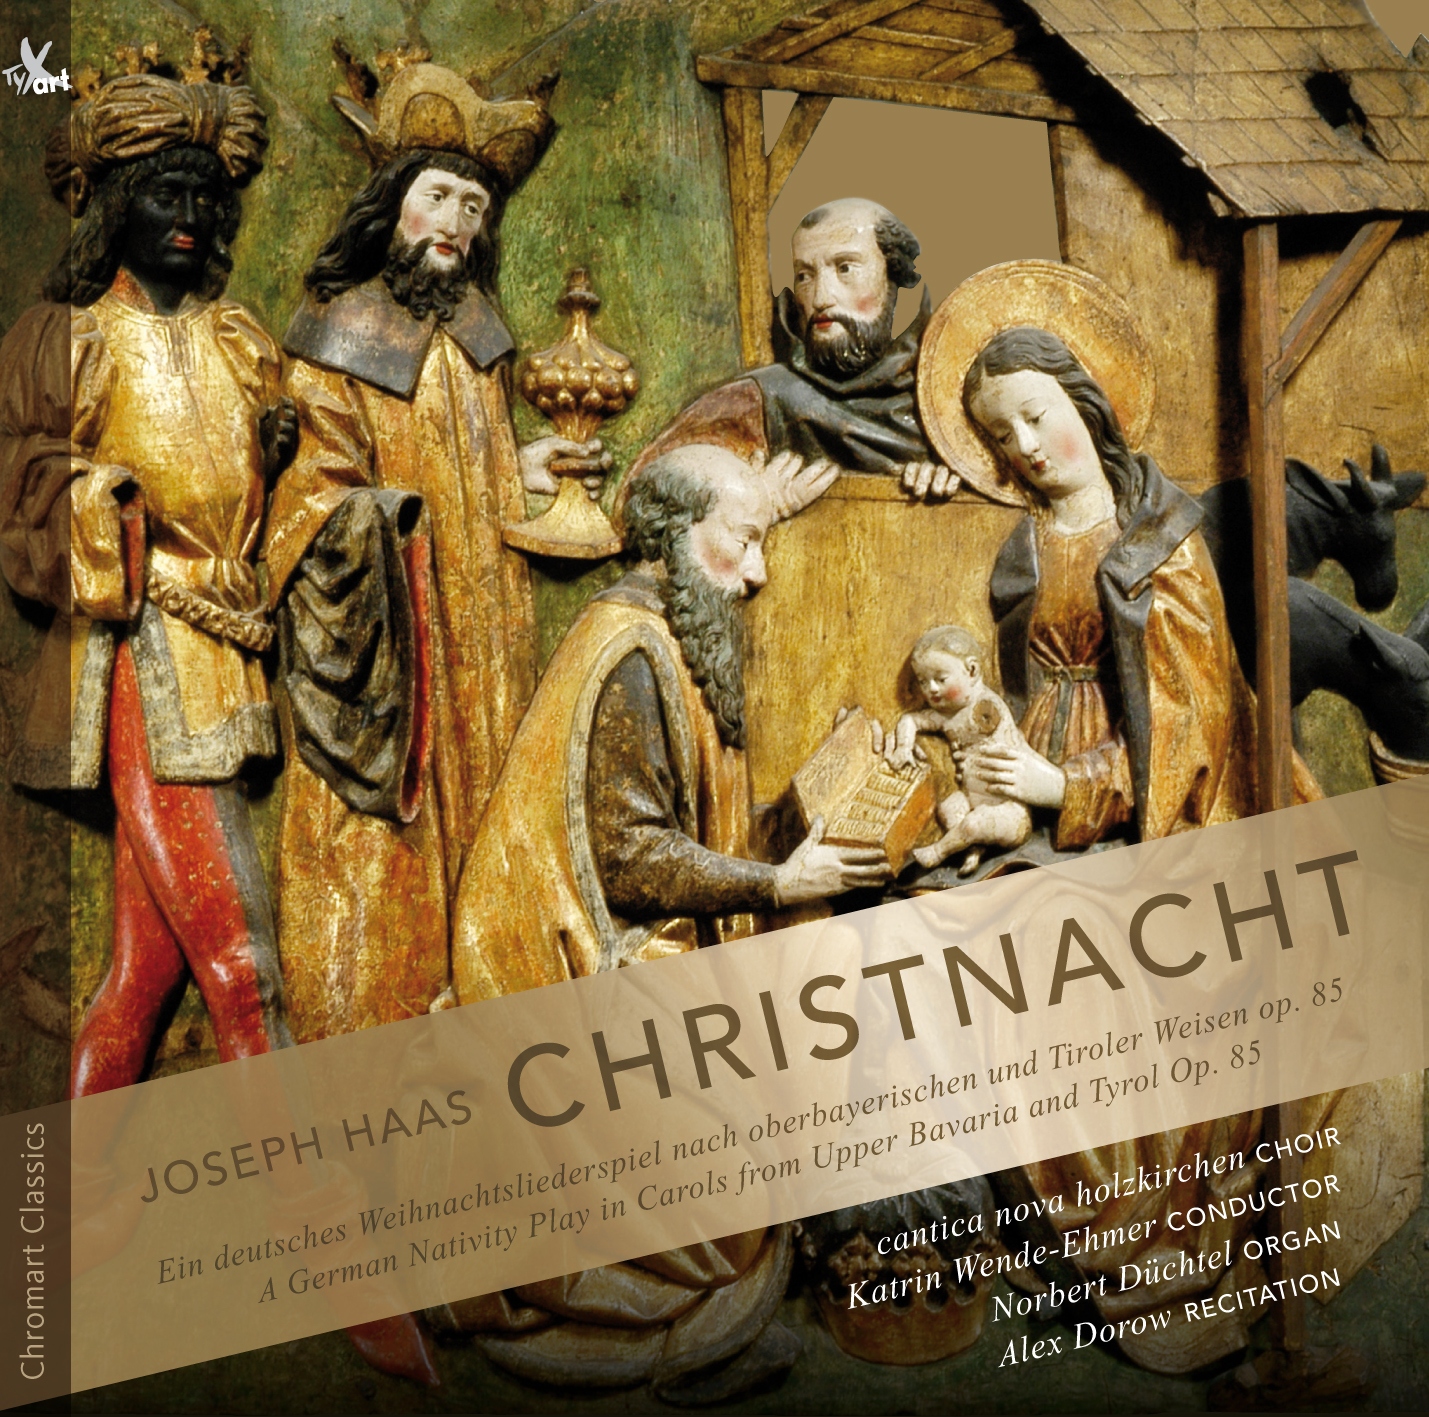 Joseph Haas: Christnacht (Christmas Eve) Op.85 - New Edition